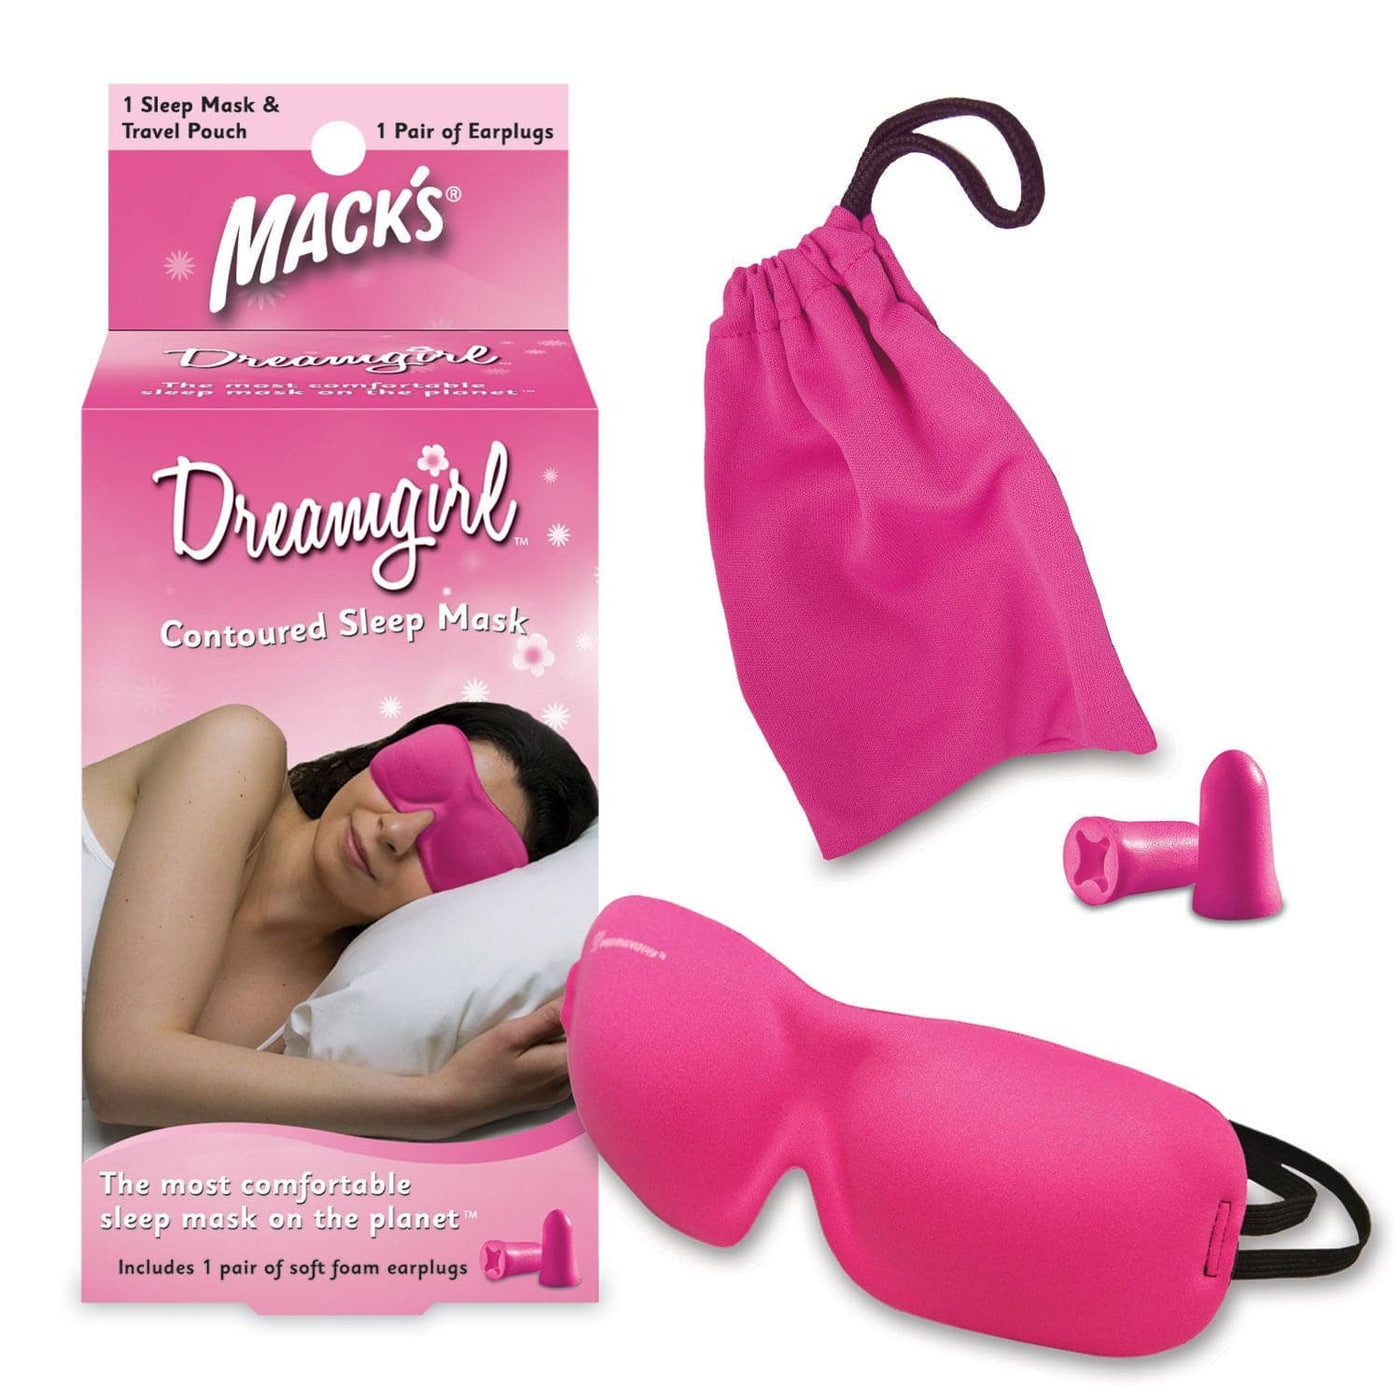 Macks Dreamgirl Sleep Mask and Case